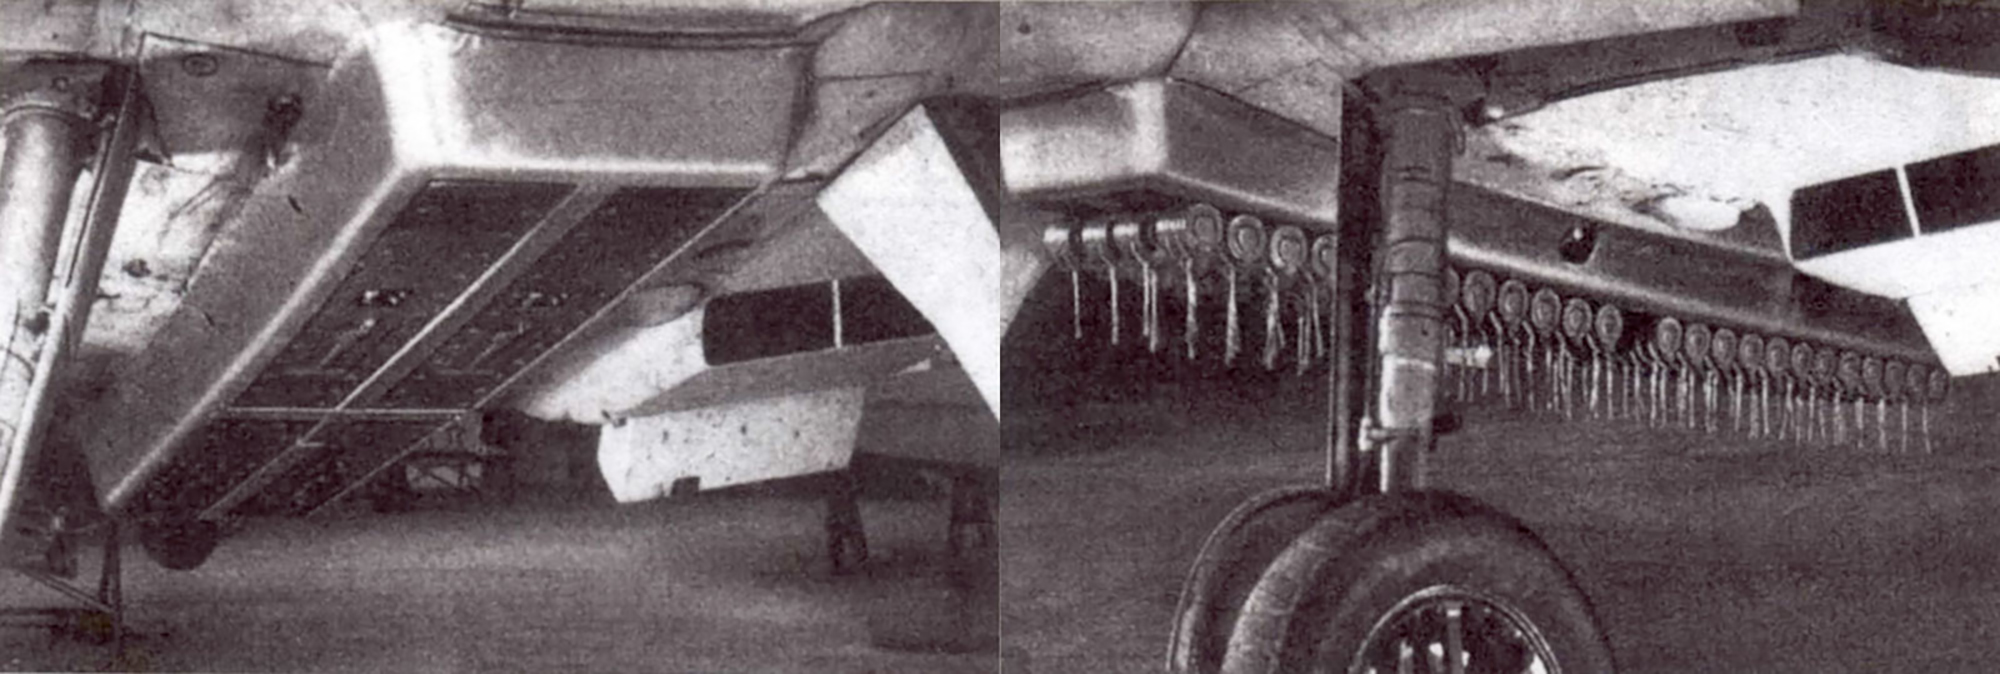 Luftwaffe-armory-closeup-of-the-SD-2-bom